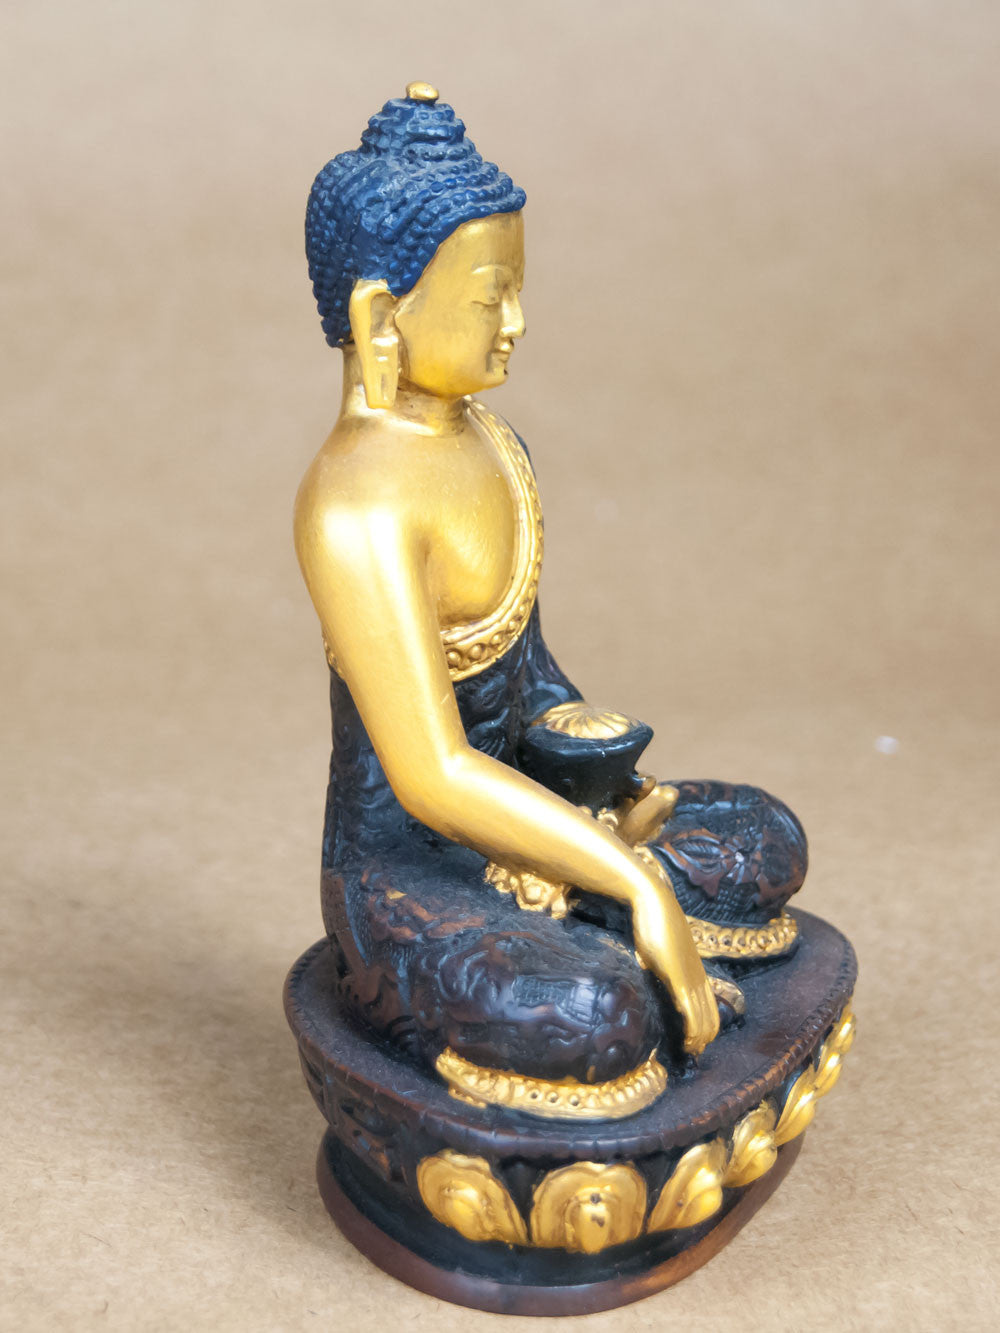 Statues - Ceramic Medicine Buddha Statue